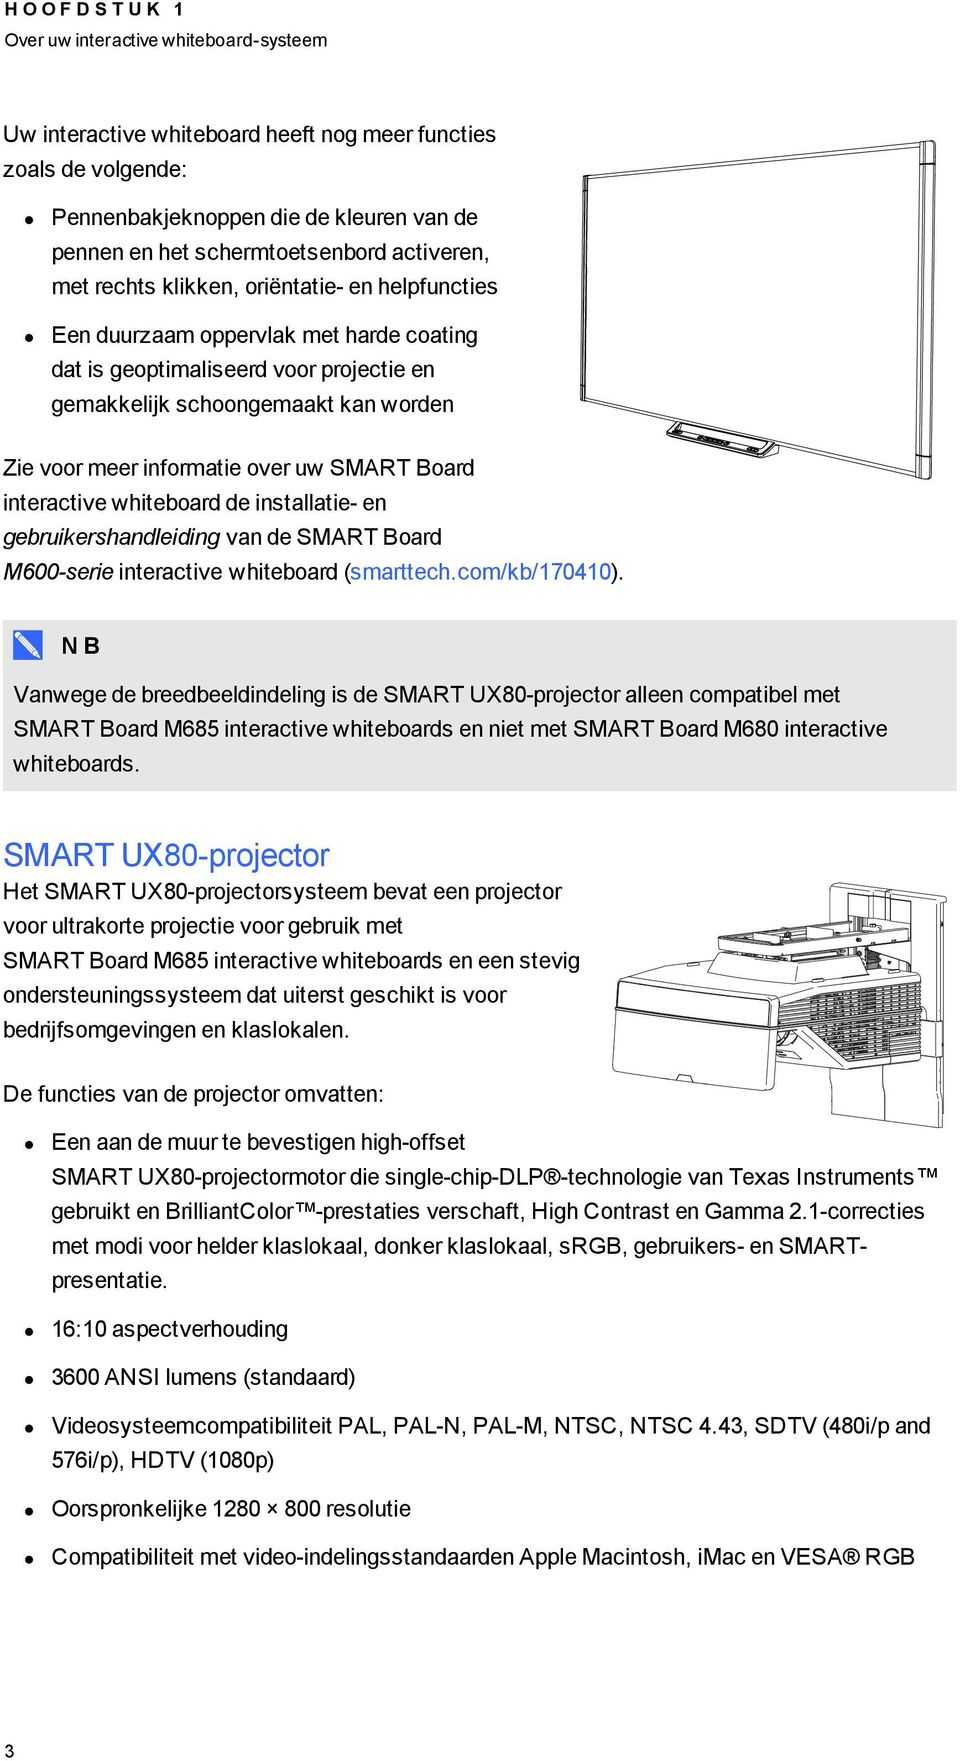 voor meer informatie over uw SMART Board interactive whiteboard de installatie- en gebruikershandleiding van de SMART Board M600-serie interactive whiteboard (smarttech.com/kb/170410).